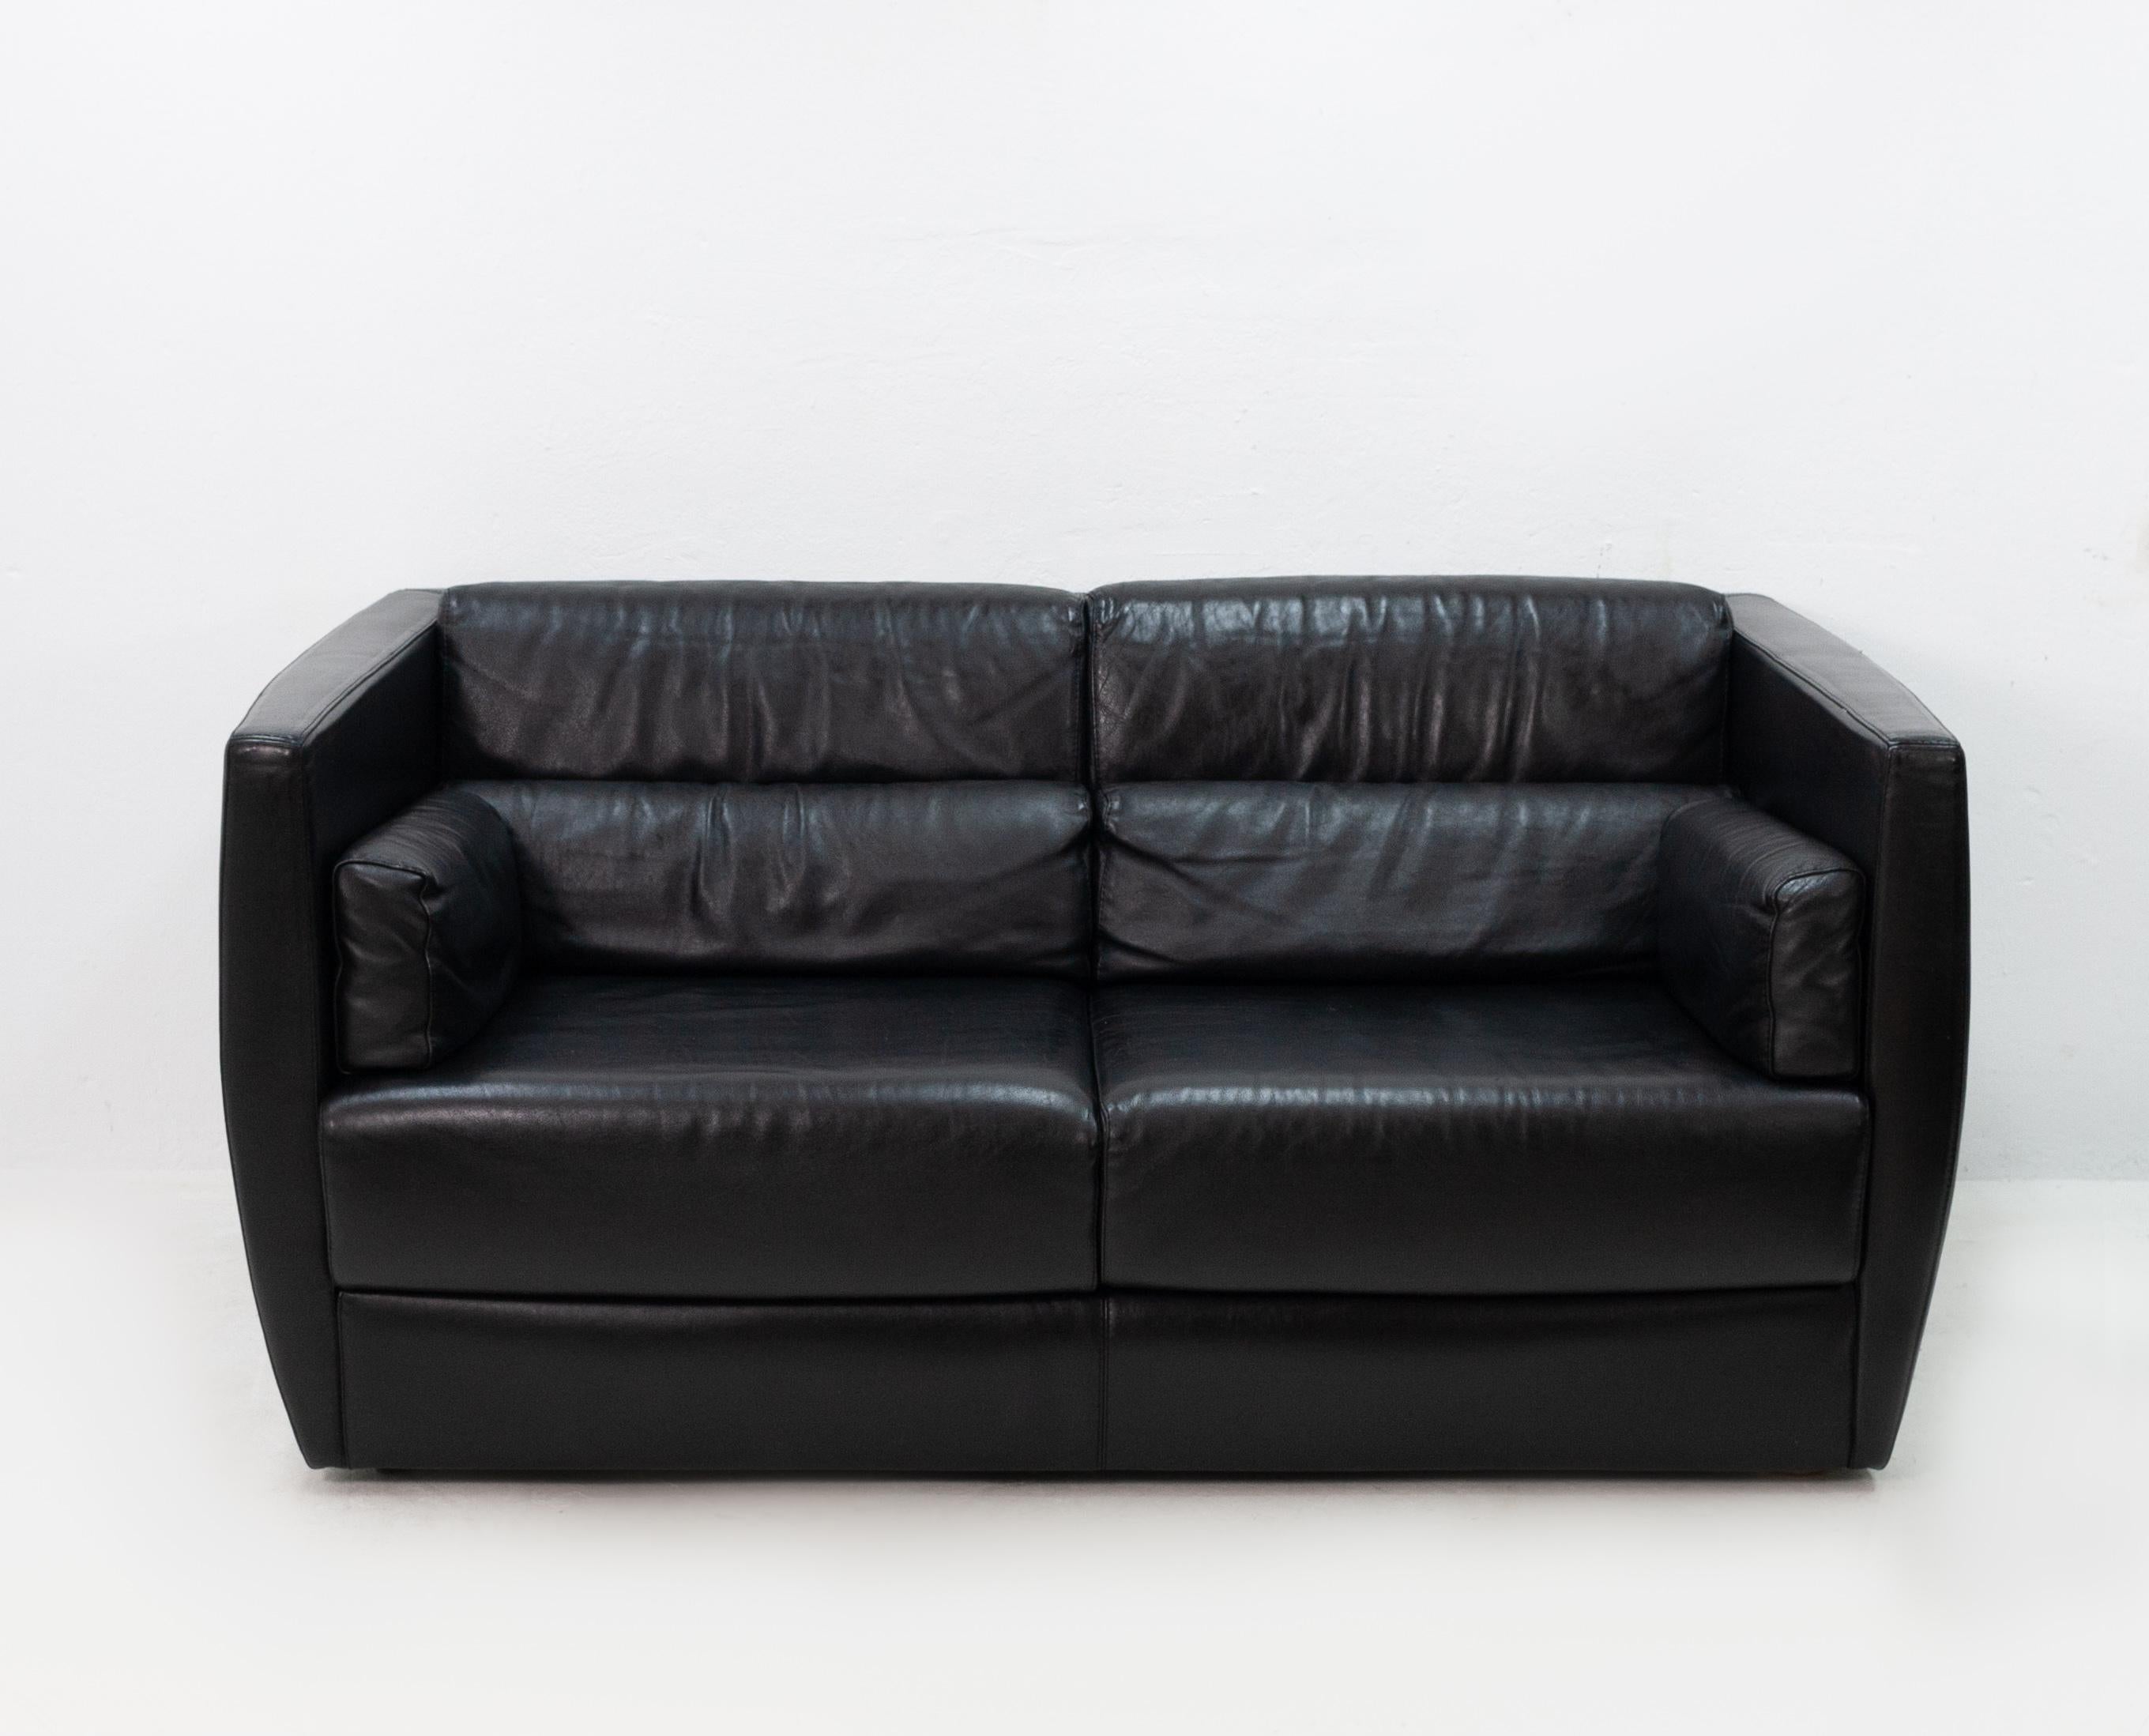 Contemporary Black Leather Love Seat Roche Bobois